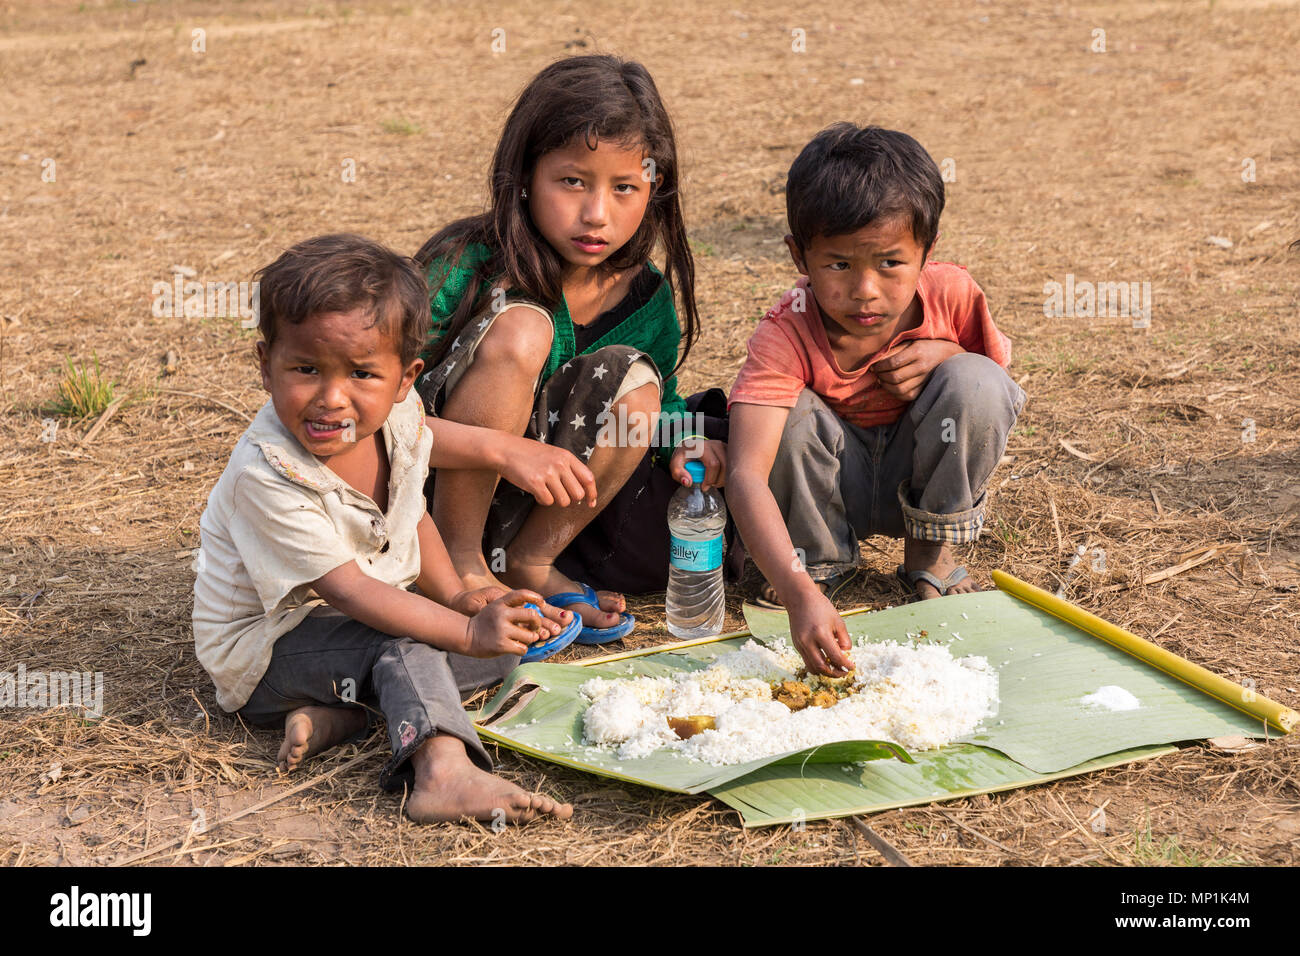 Kinder essen gemeinsames Essen auf dem Boden, Саква, Meghalaya, Indien Stockfoto